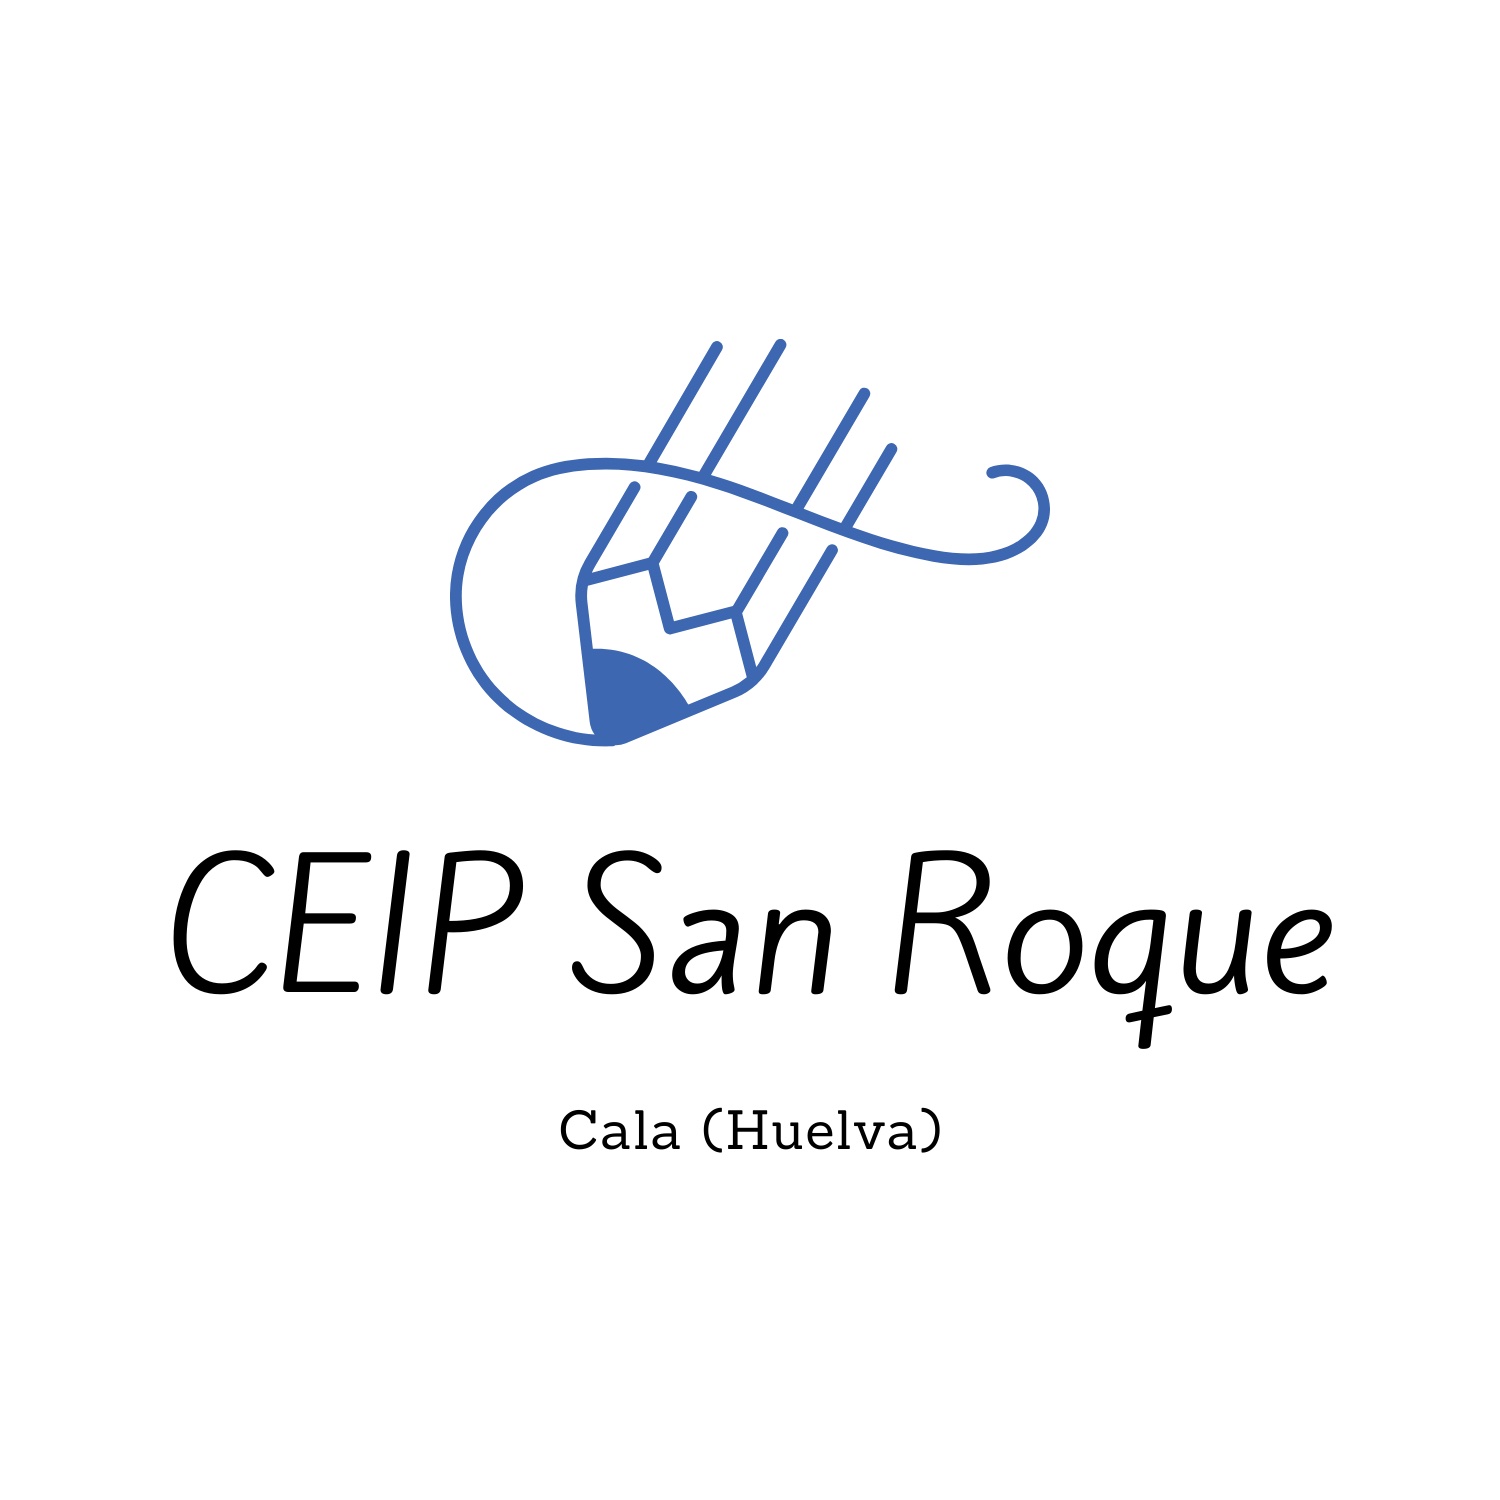 CEIP San Roque